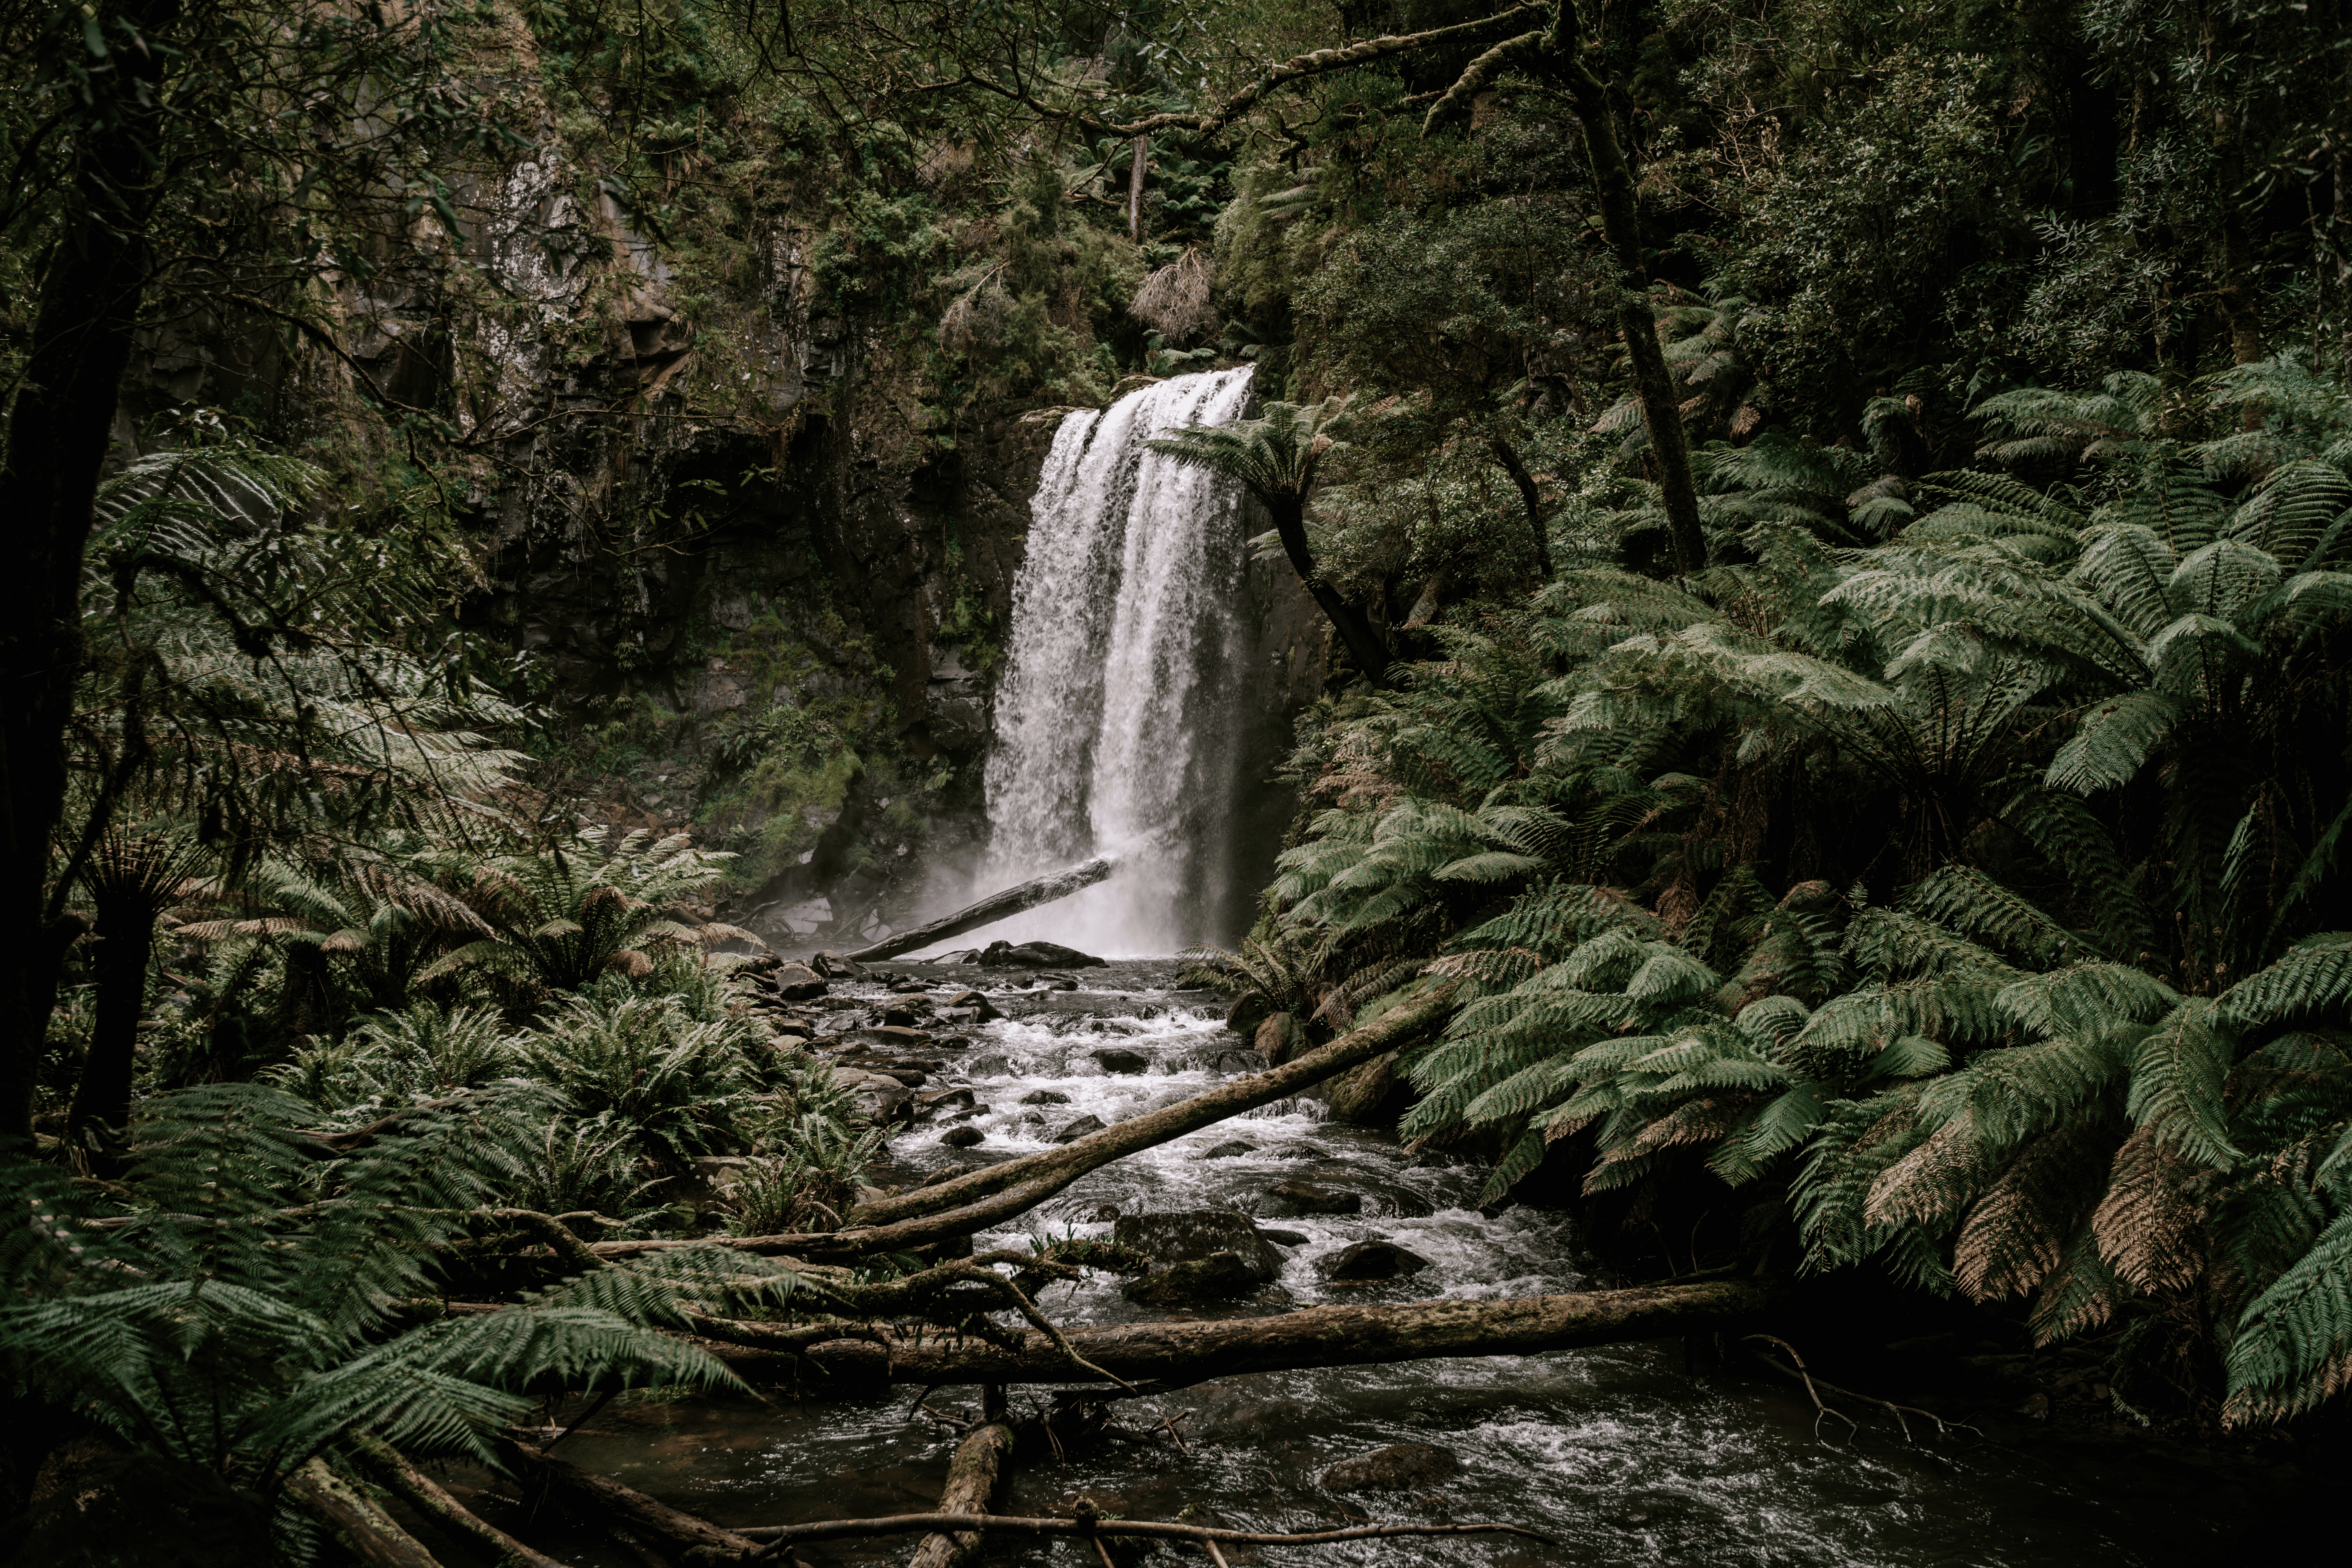 A beautiful view of Hopetoun Falls among lush and green vegetation